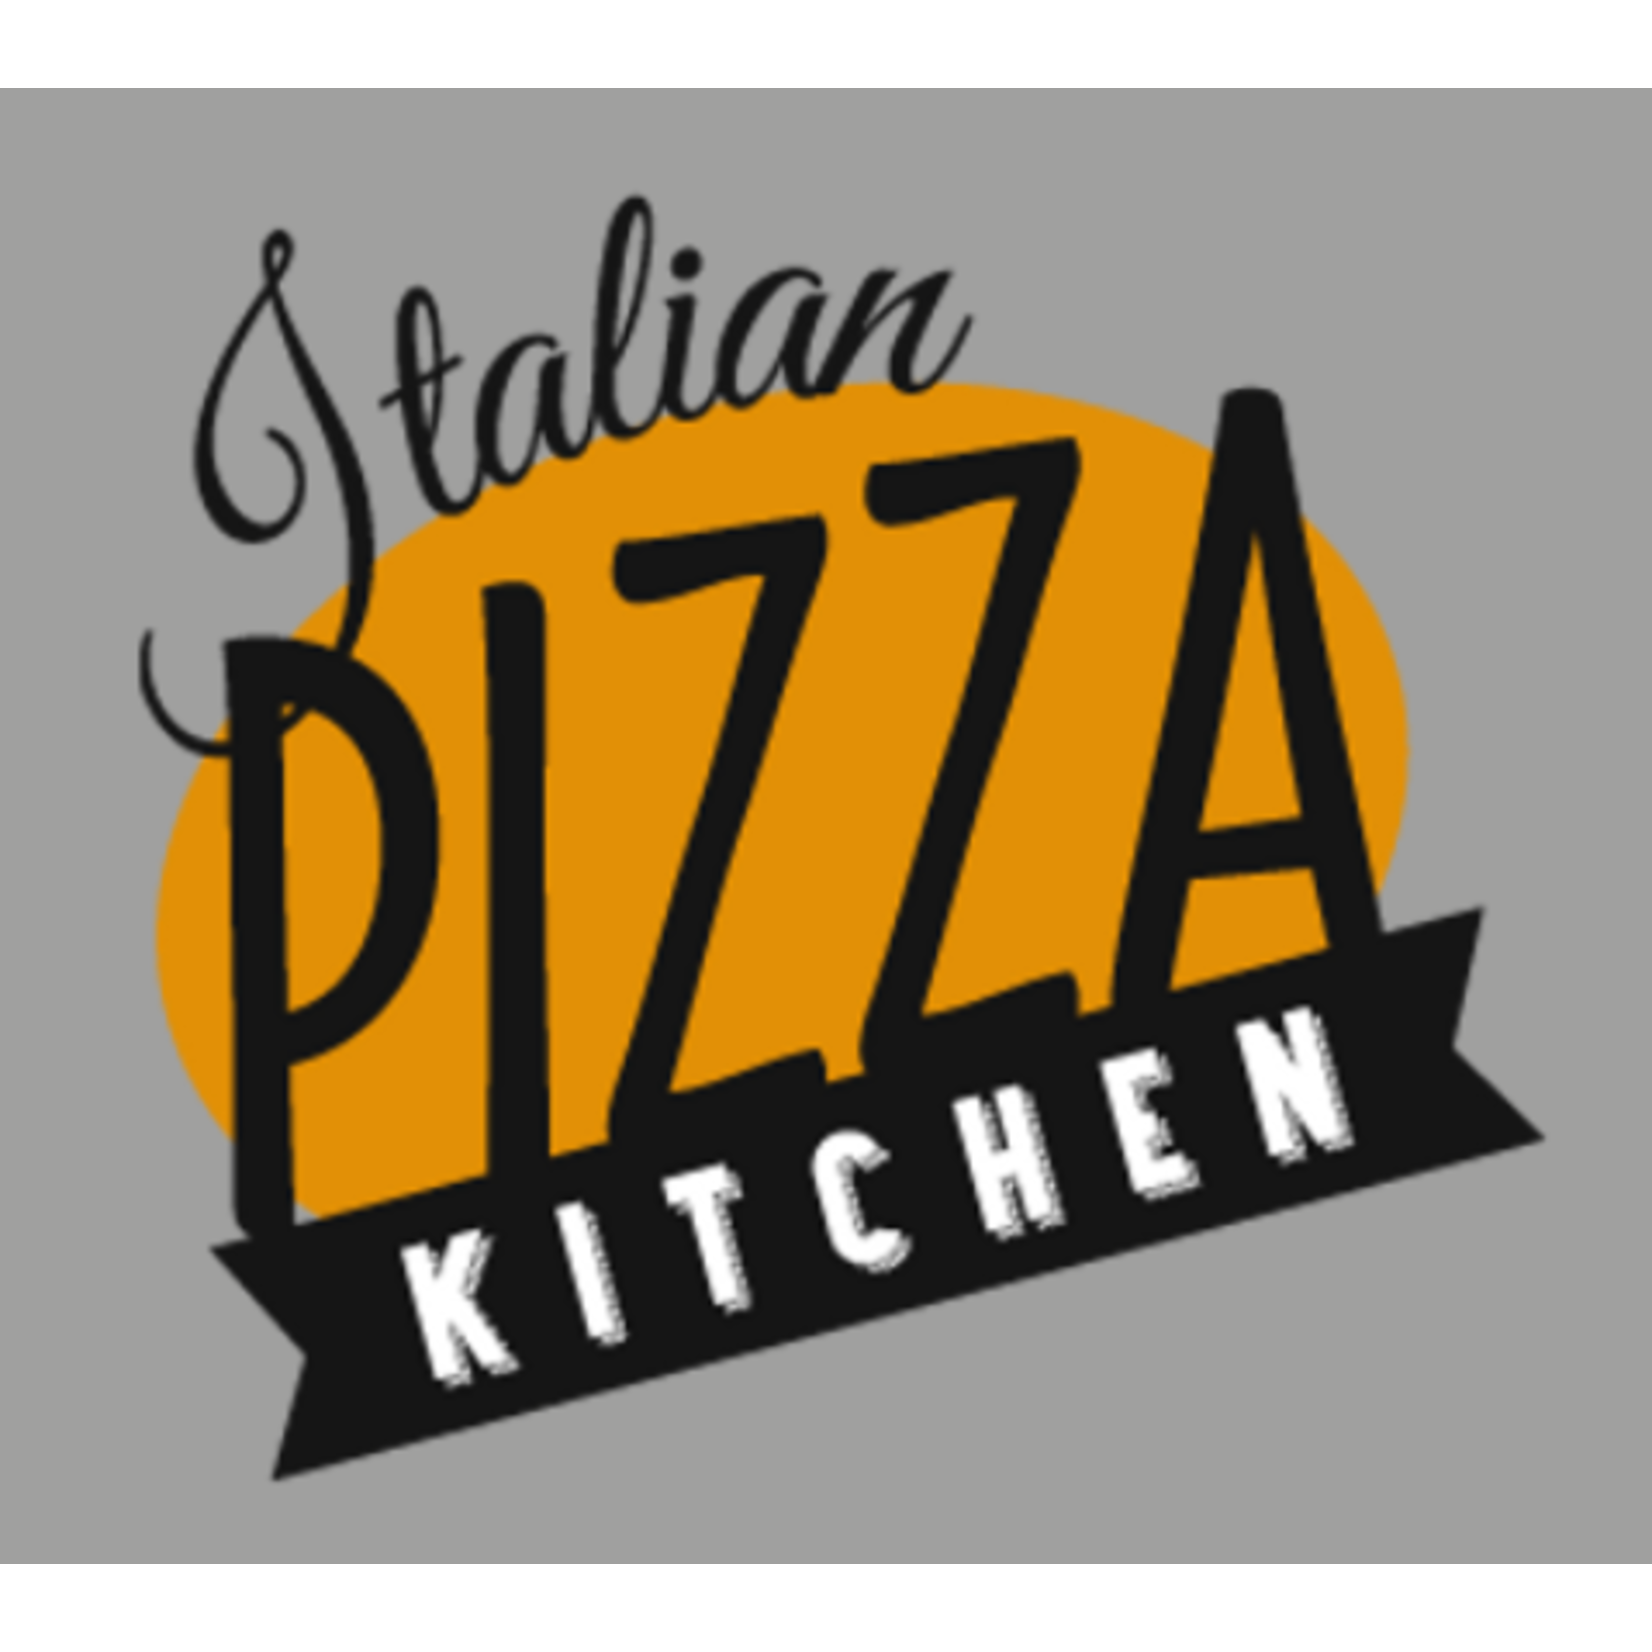 Italian Pizza Kitchen-Roselle Italian Pizza Kitchen-Roselle $20.00 Dining certificate